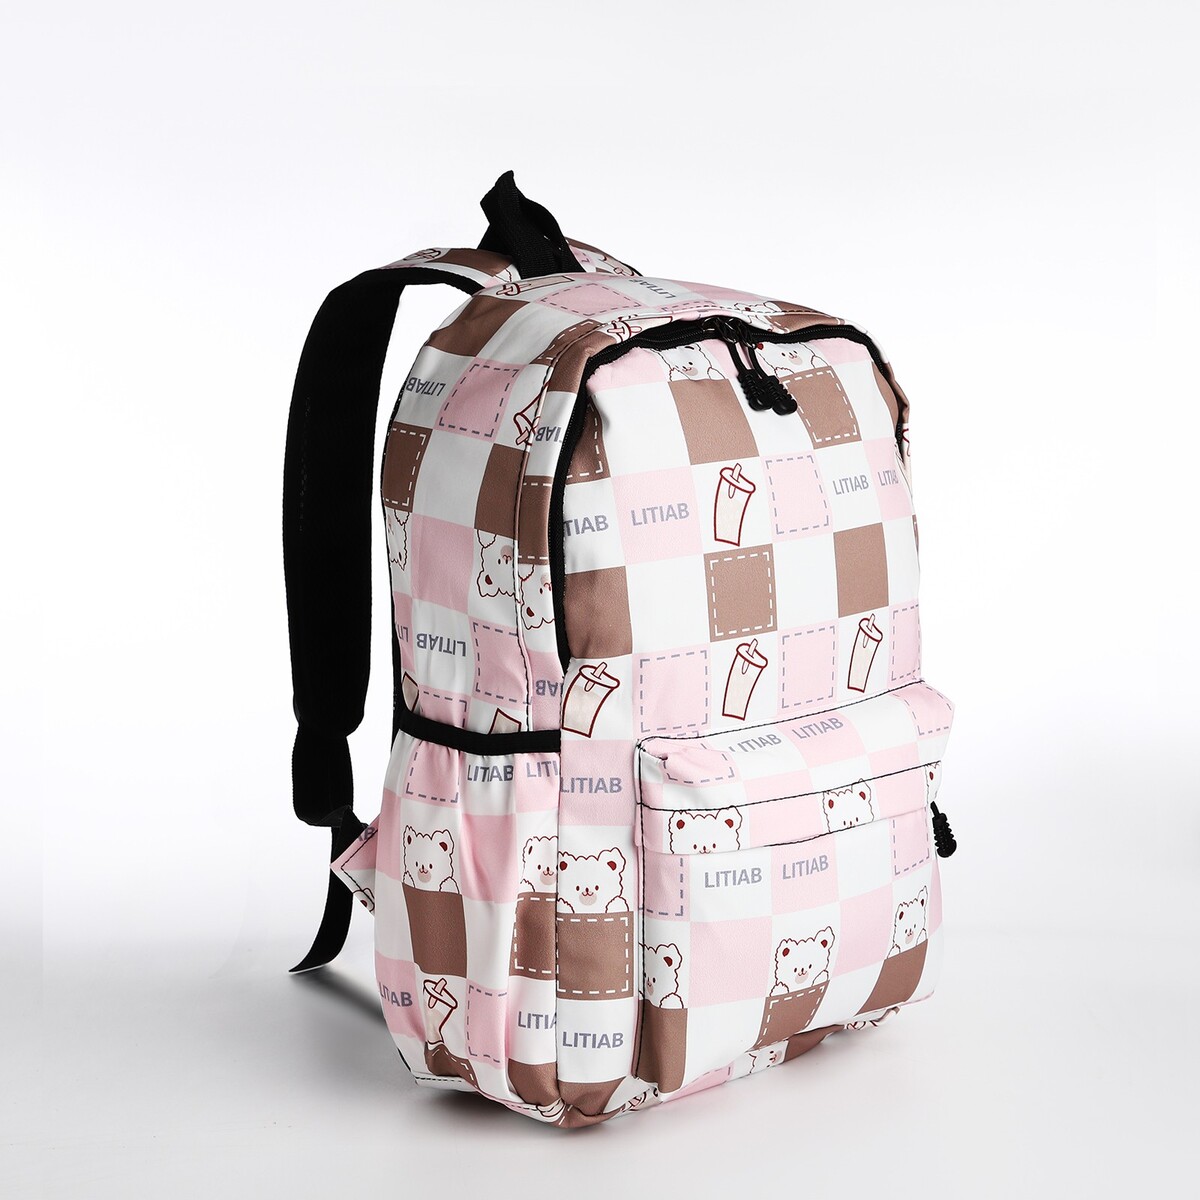 Рюкзак молодежный из текстиля, 3 кармана, цвет бежевый/розовый рюкзак молодежный из текстиля 4 кармана белый розовый